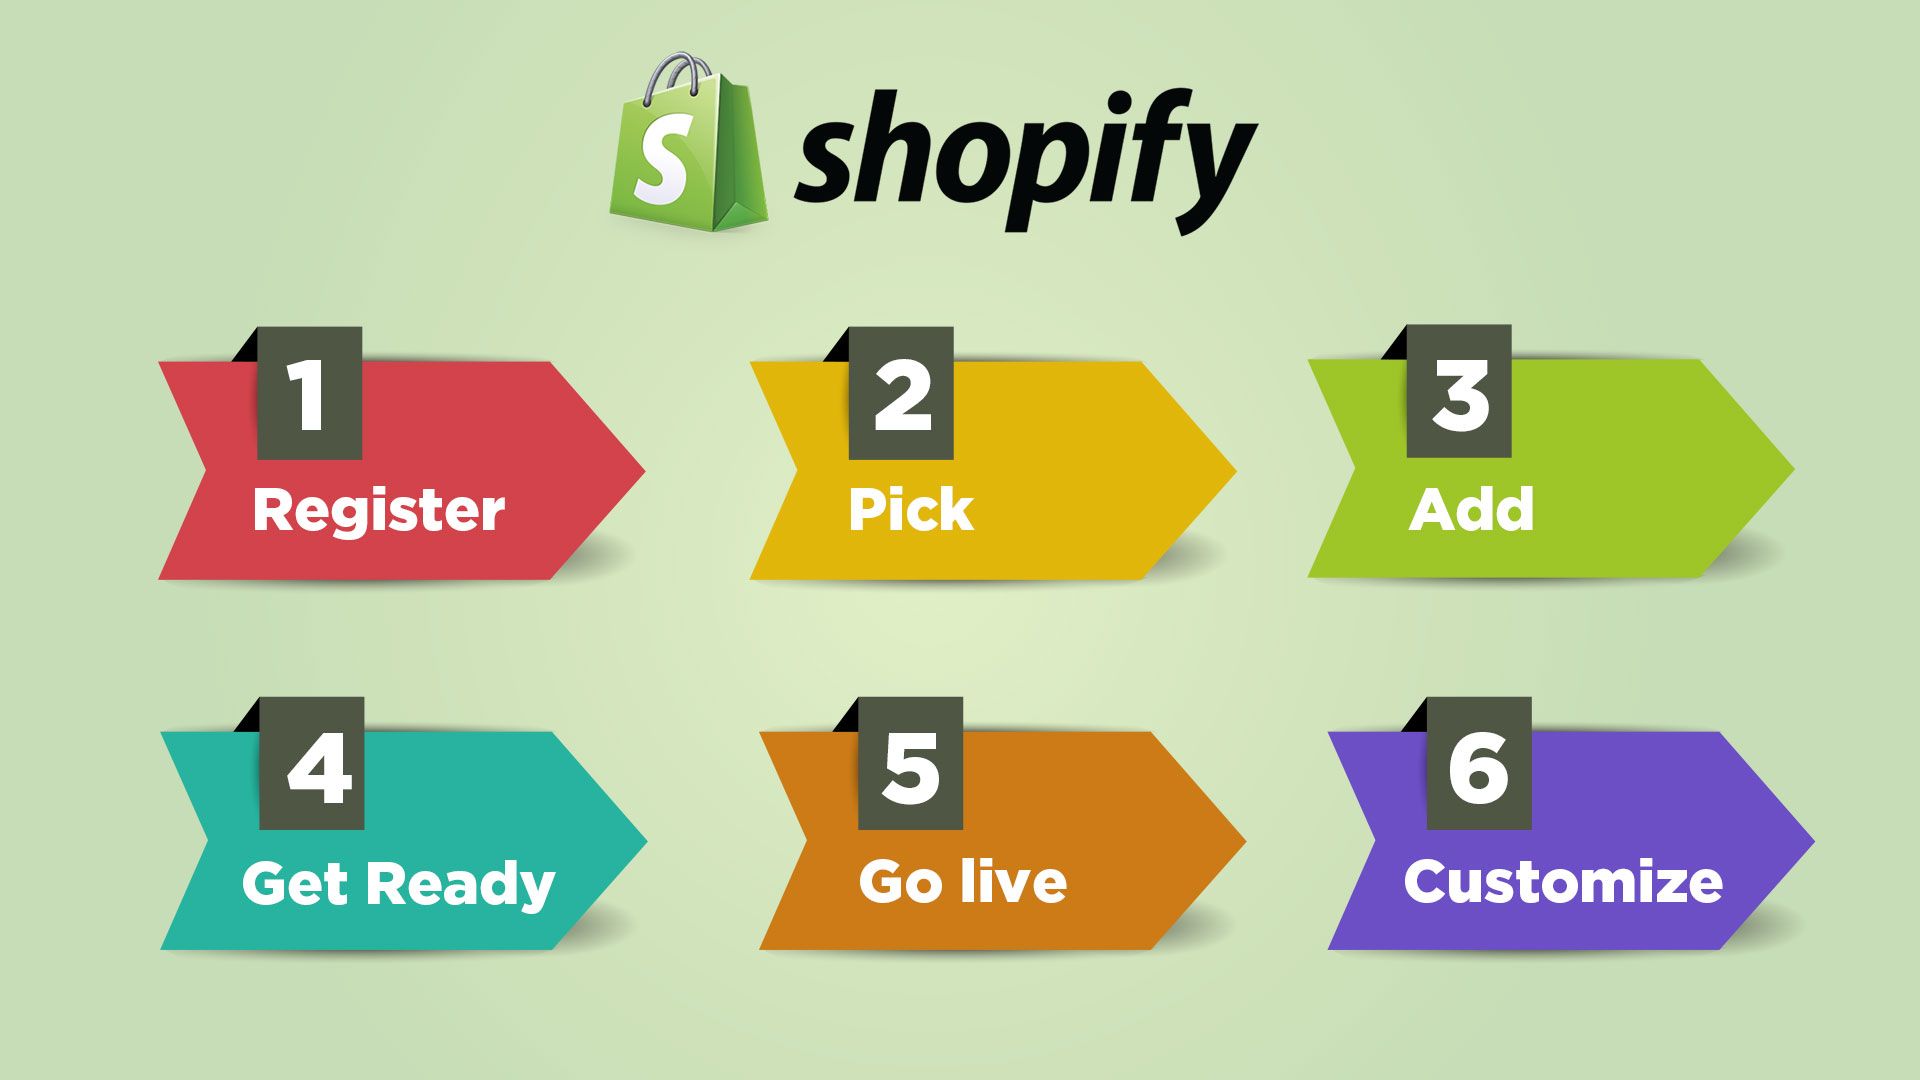 βήματα για κατασκευή eshop shopify